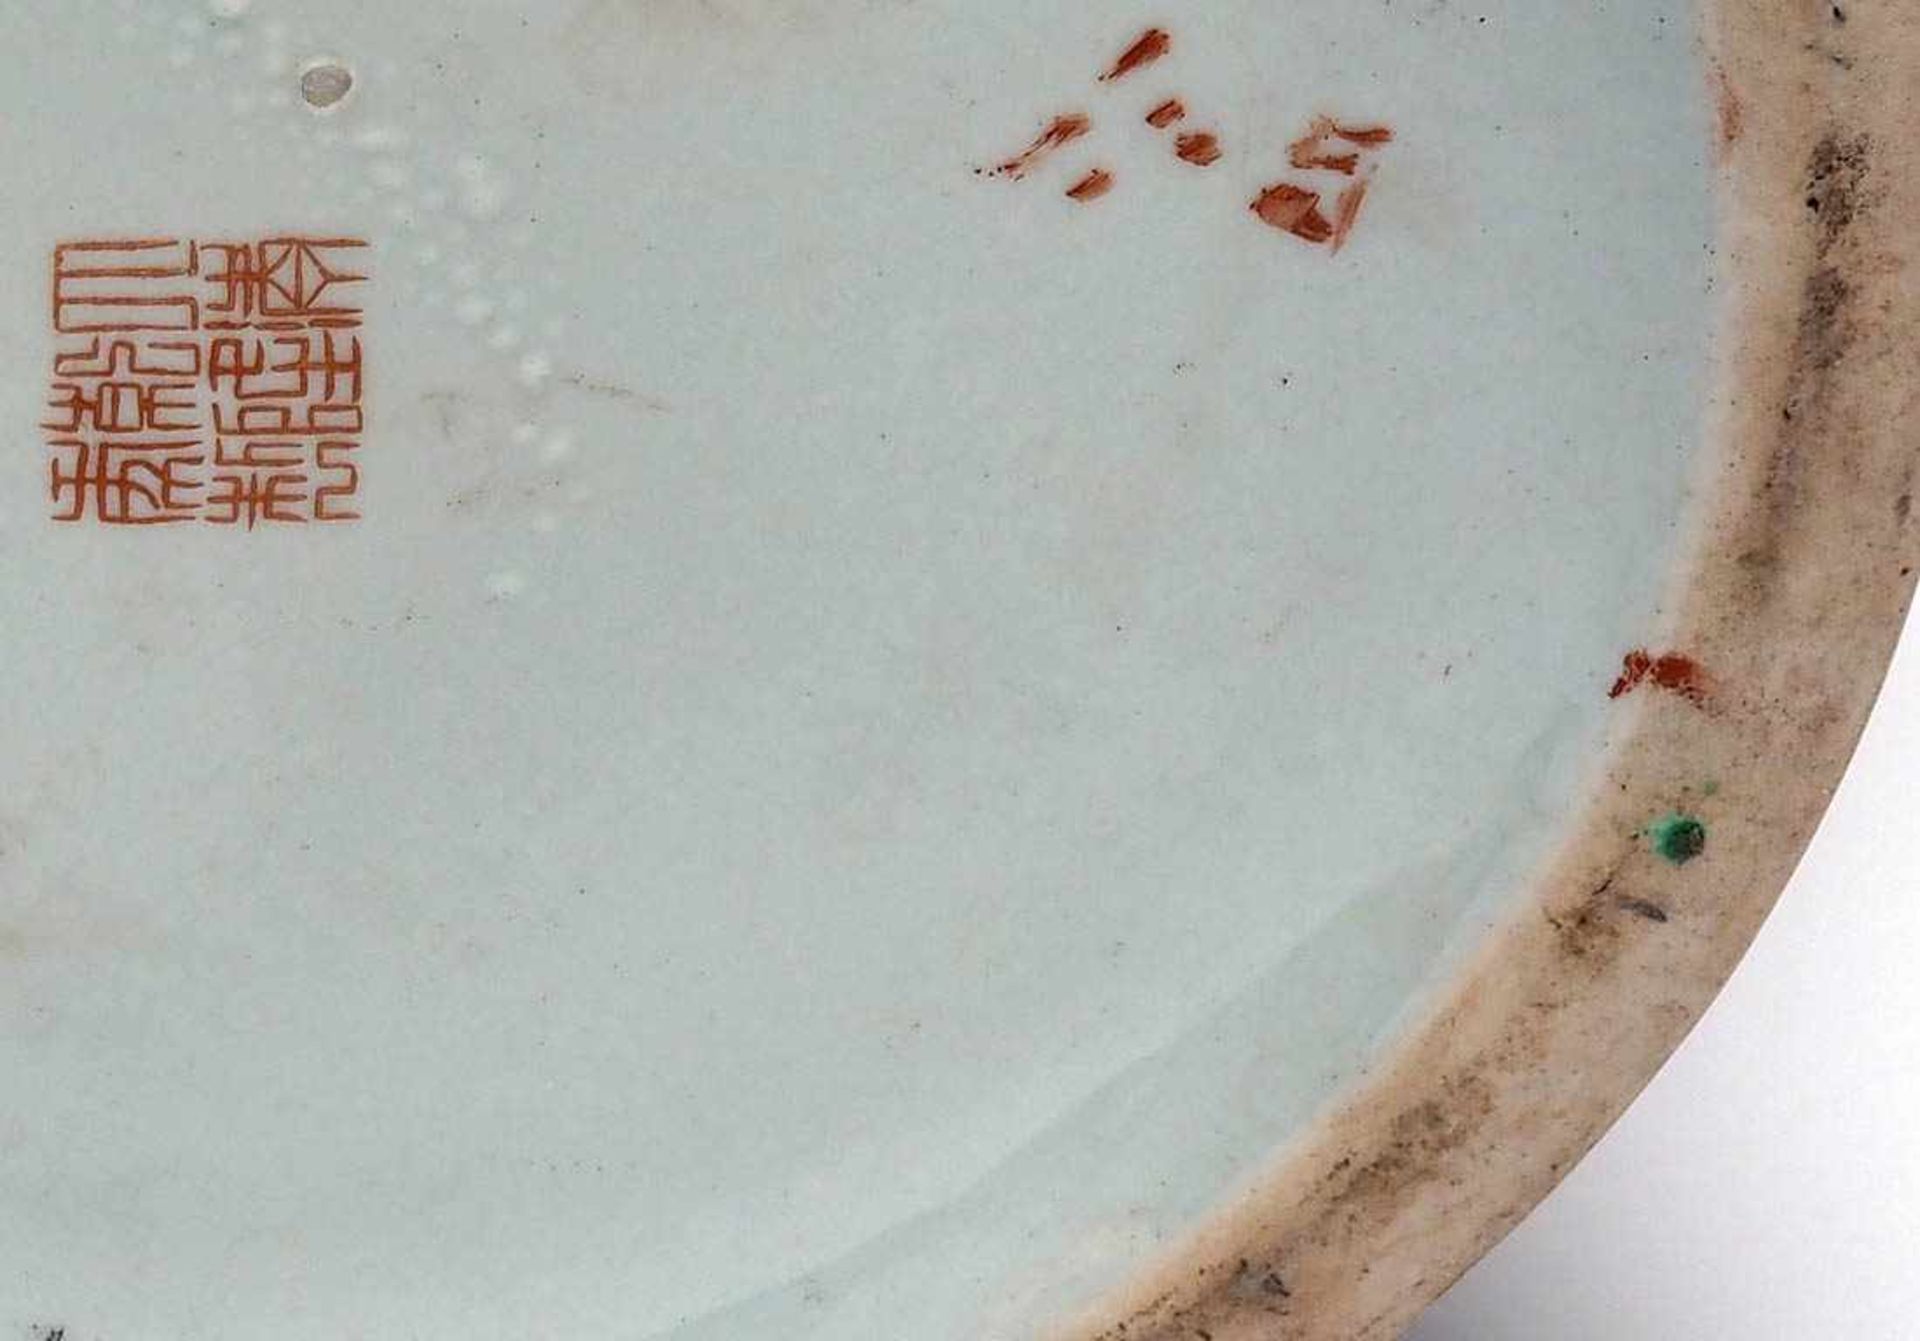 Deckelvase, China, 19.Jhdt.Bauchiger Korpus, Haubendeckel mit linsenförmigem Knauf. Auf der - Bild 7 aus 7